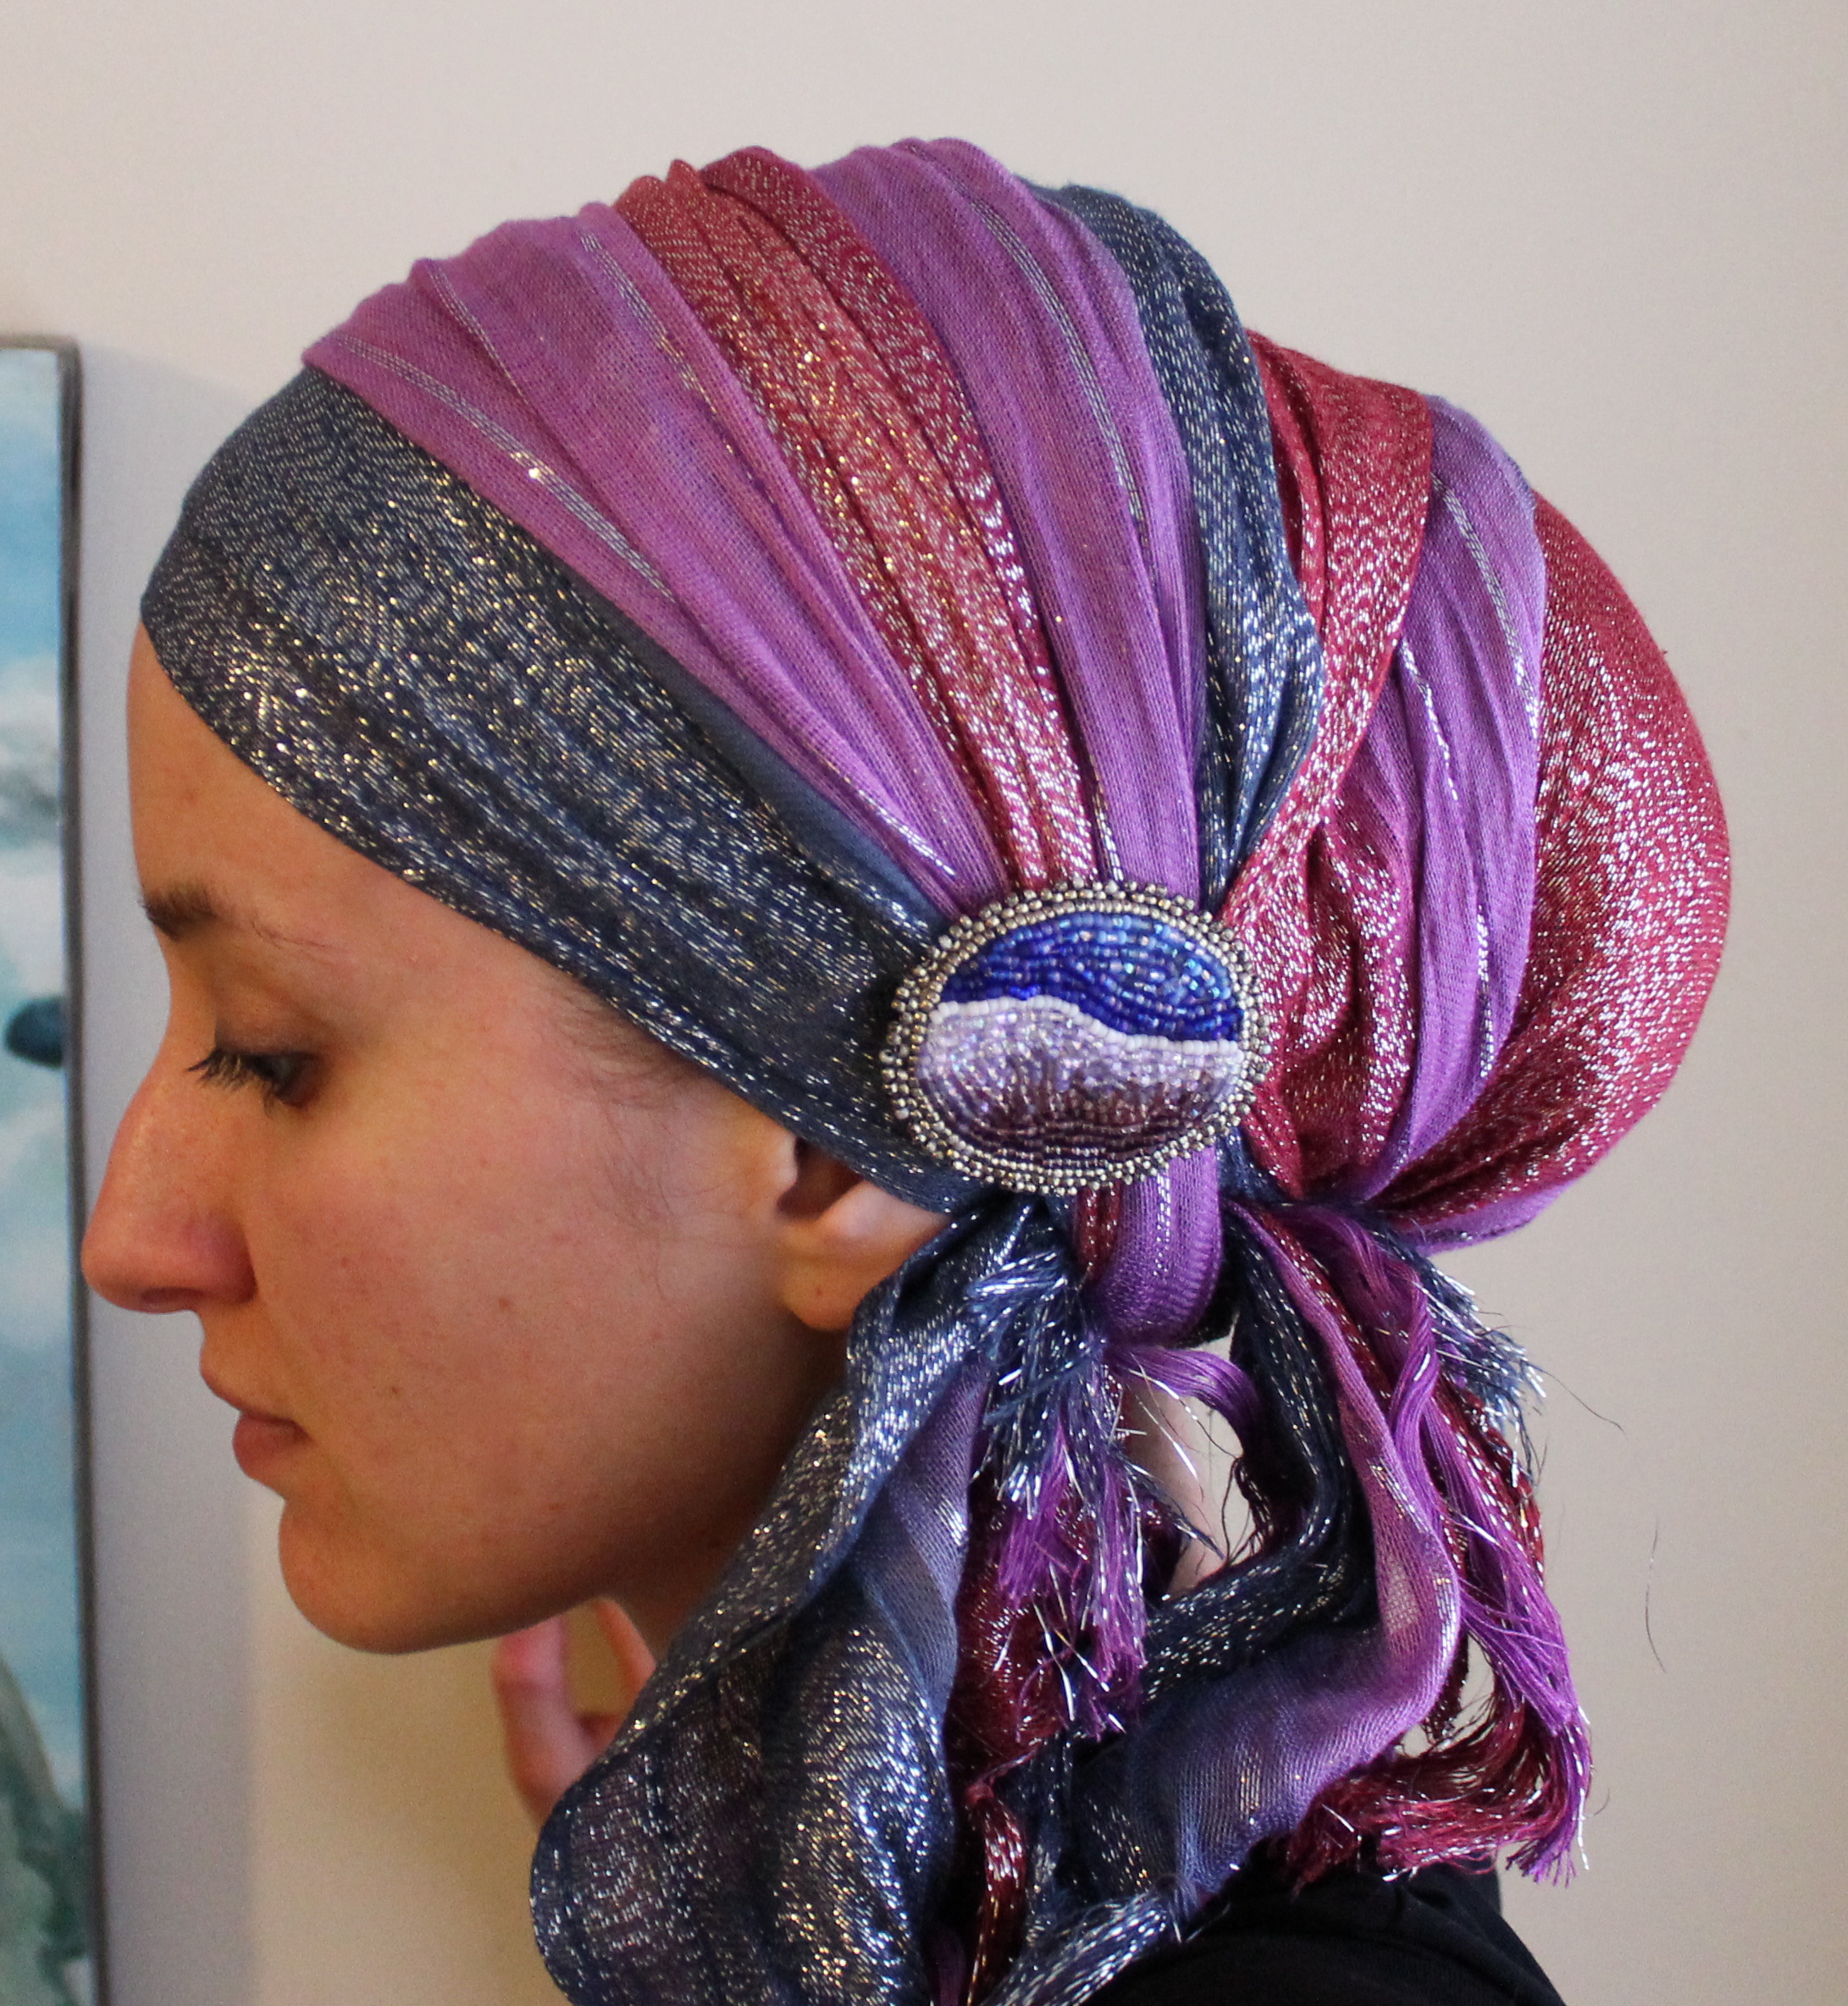 Как сделать платок на голову. Платок на голову. Платок в волосах. Тюрбан из платка. Узбекские платки на голову.